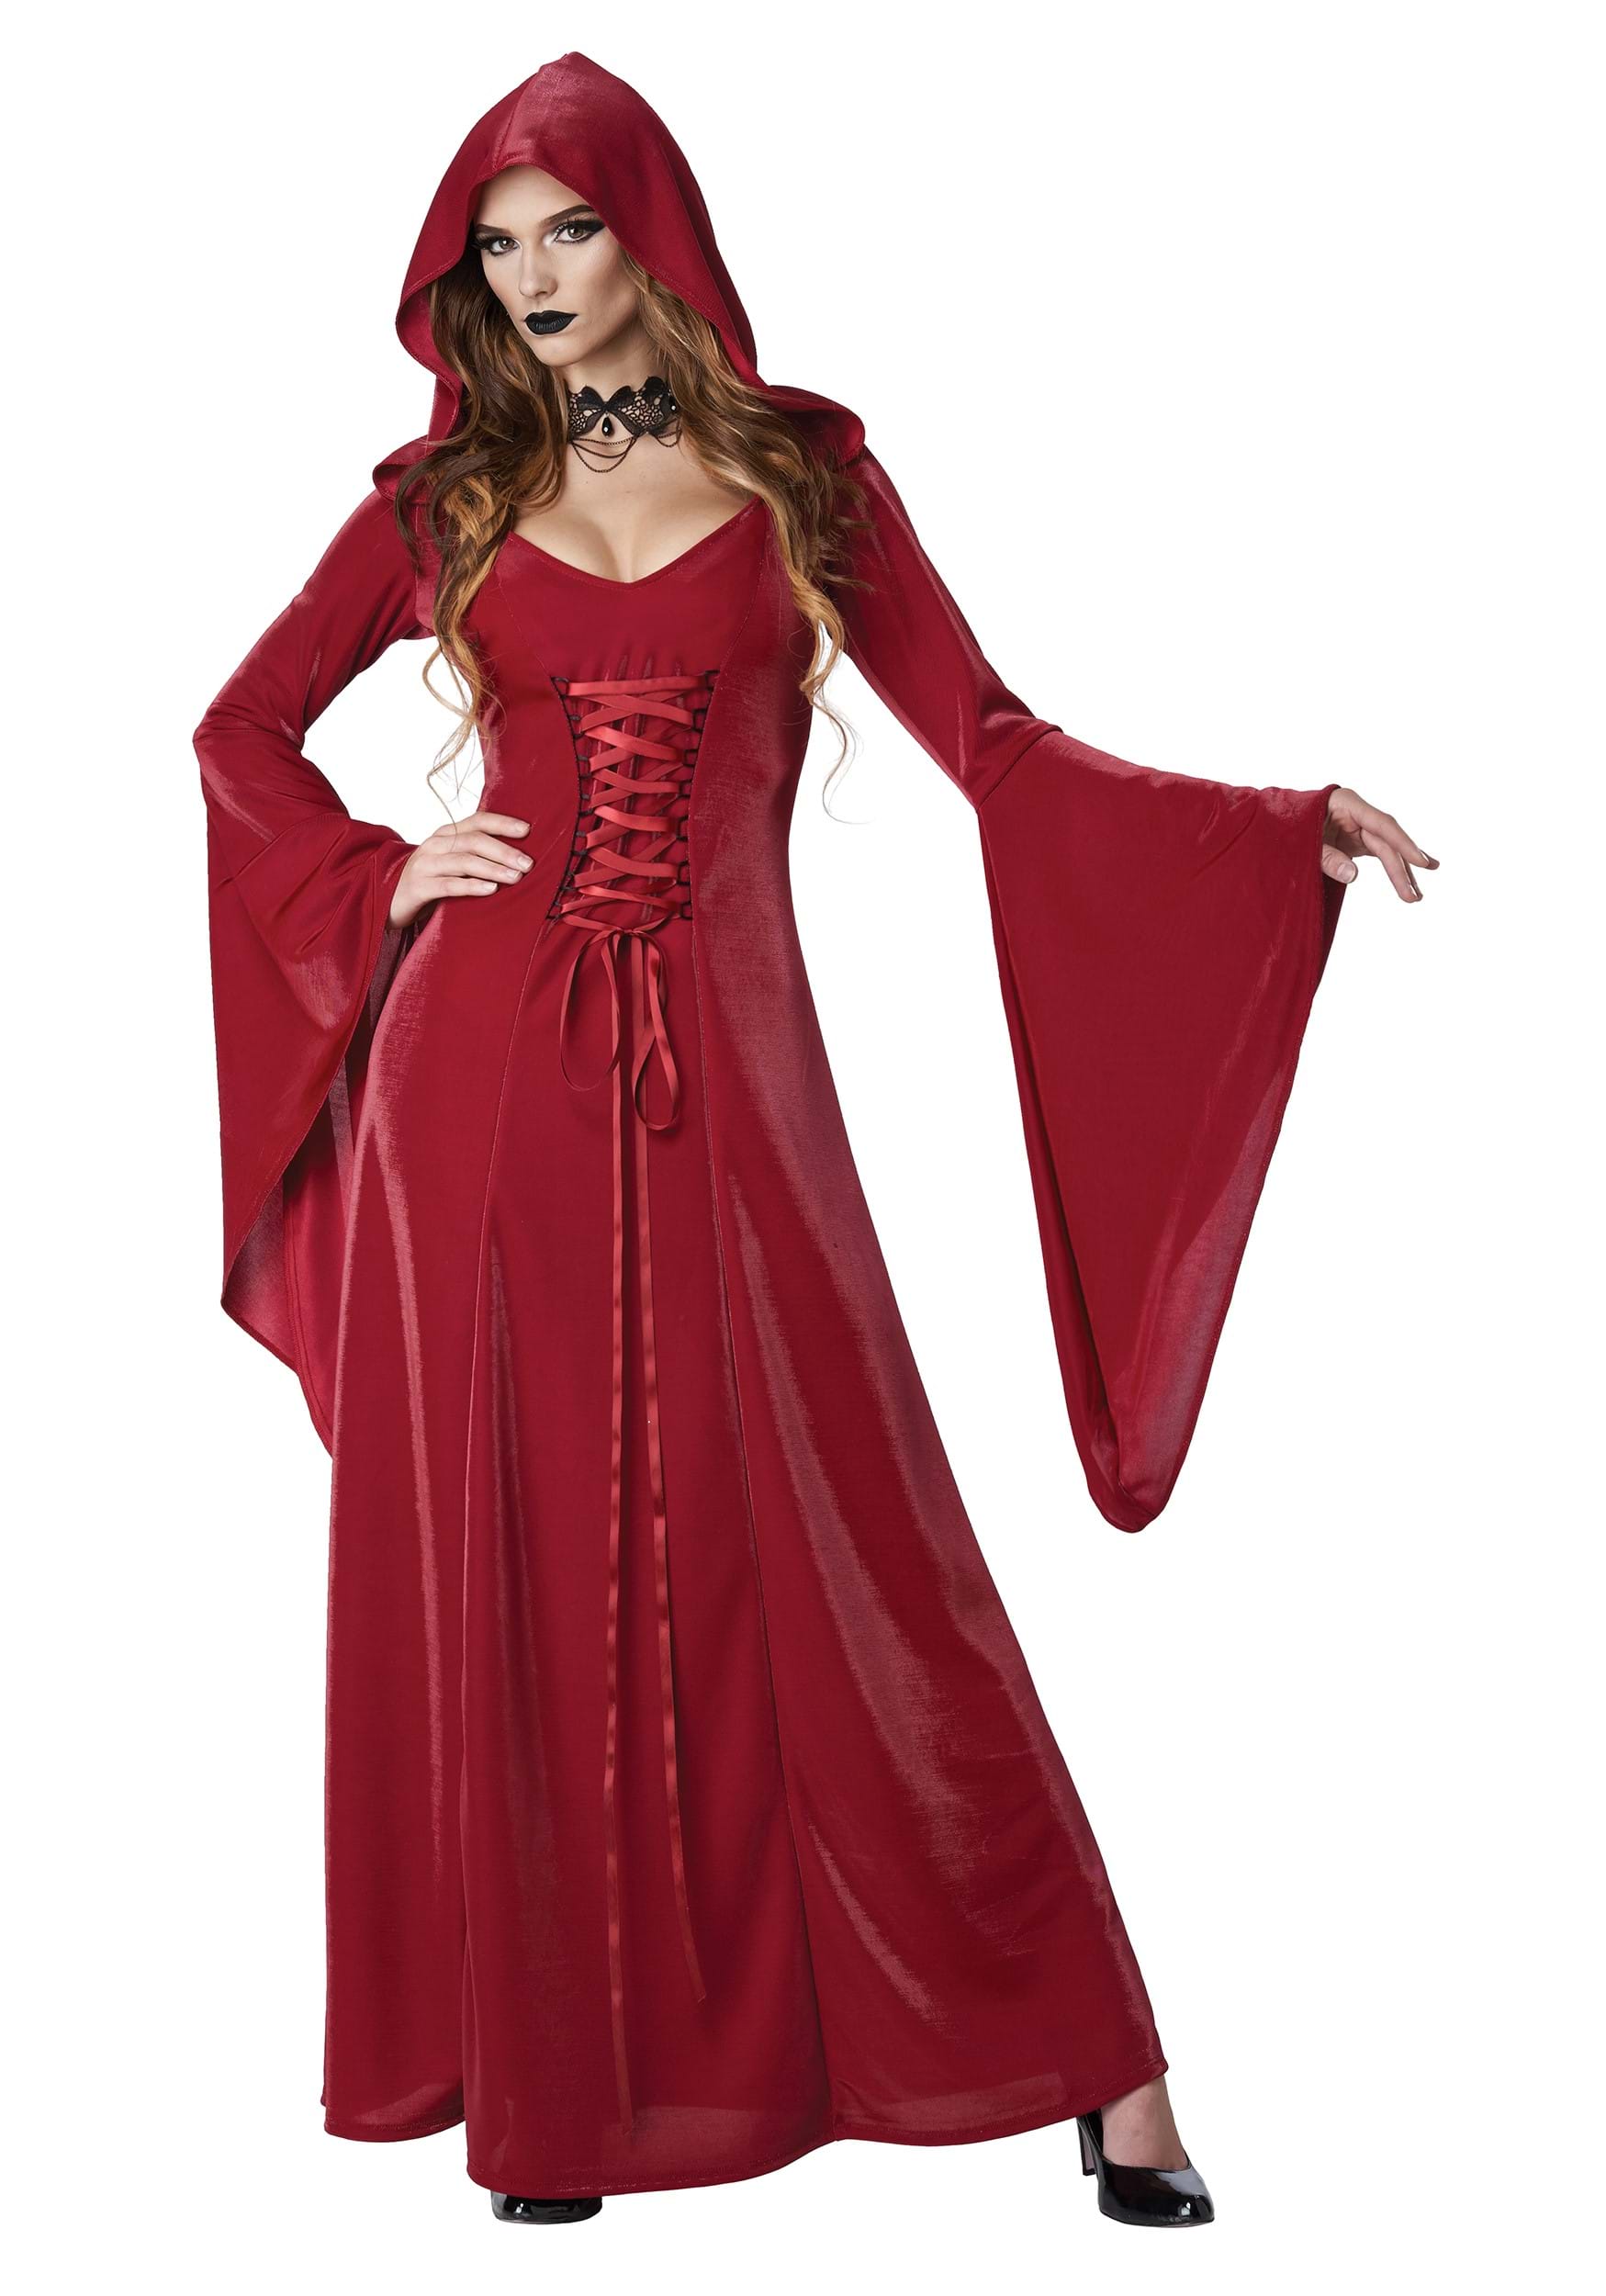 Crimson Robe Adult Costume for Women